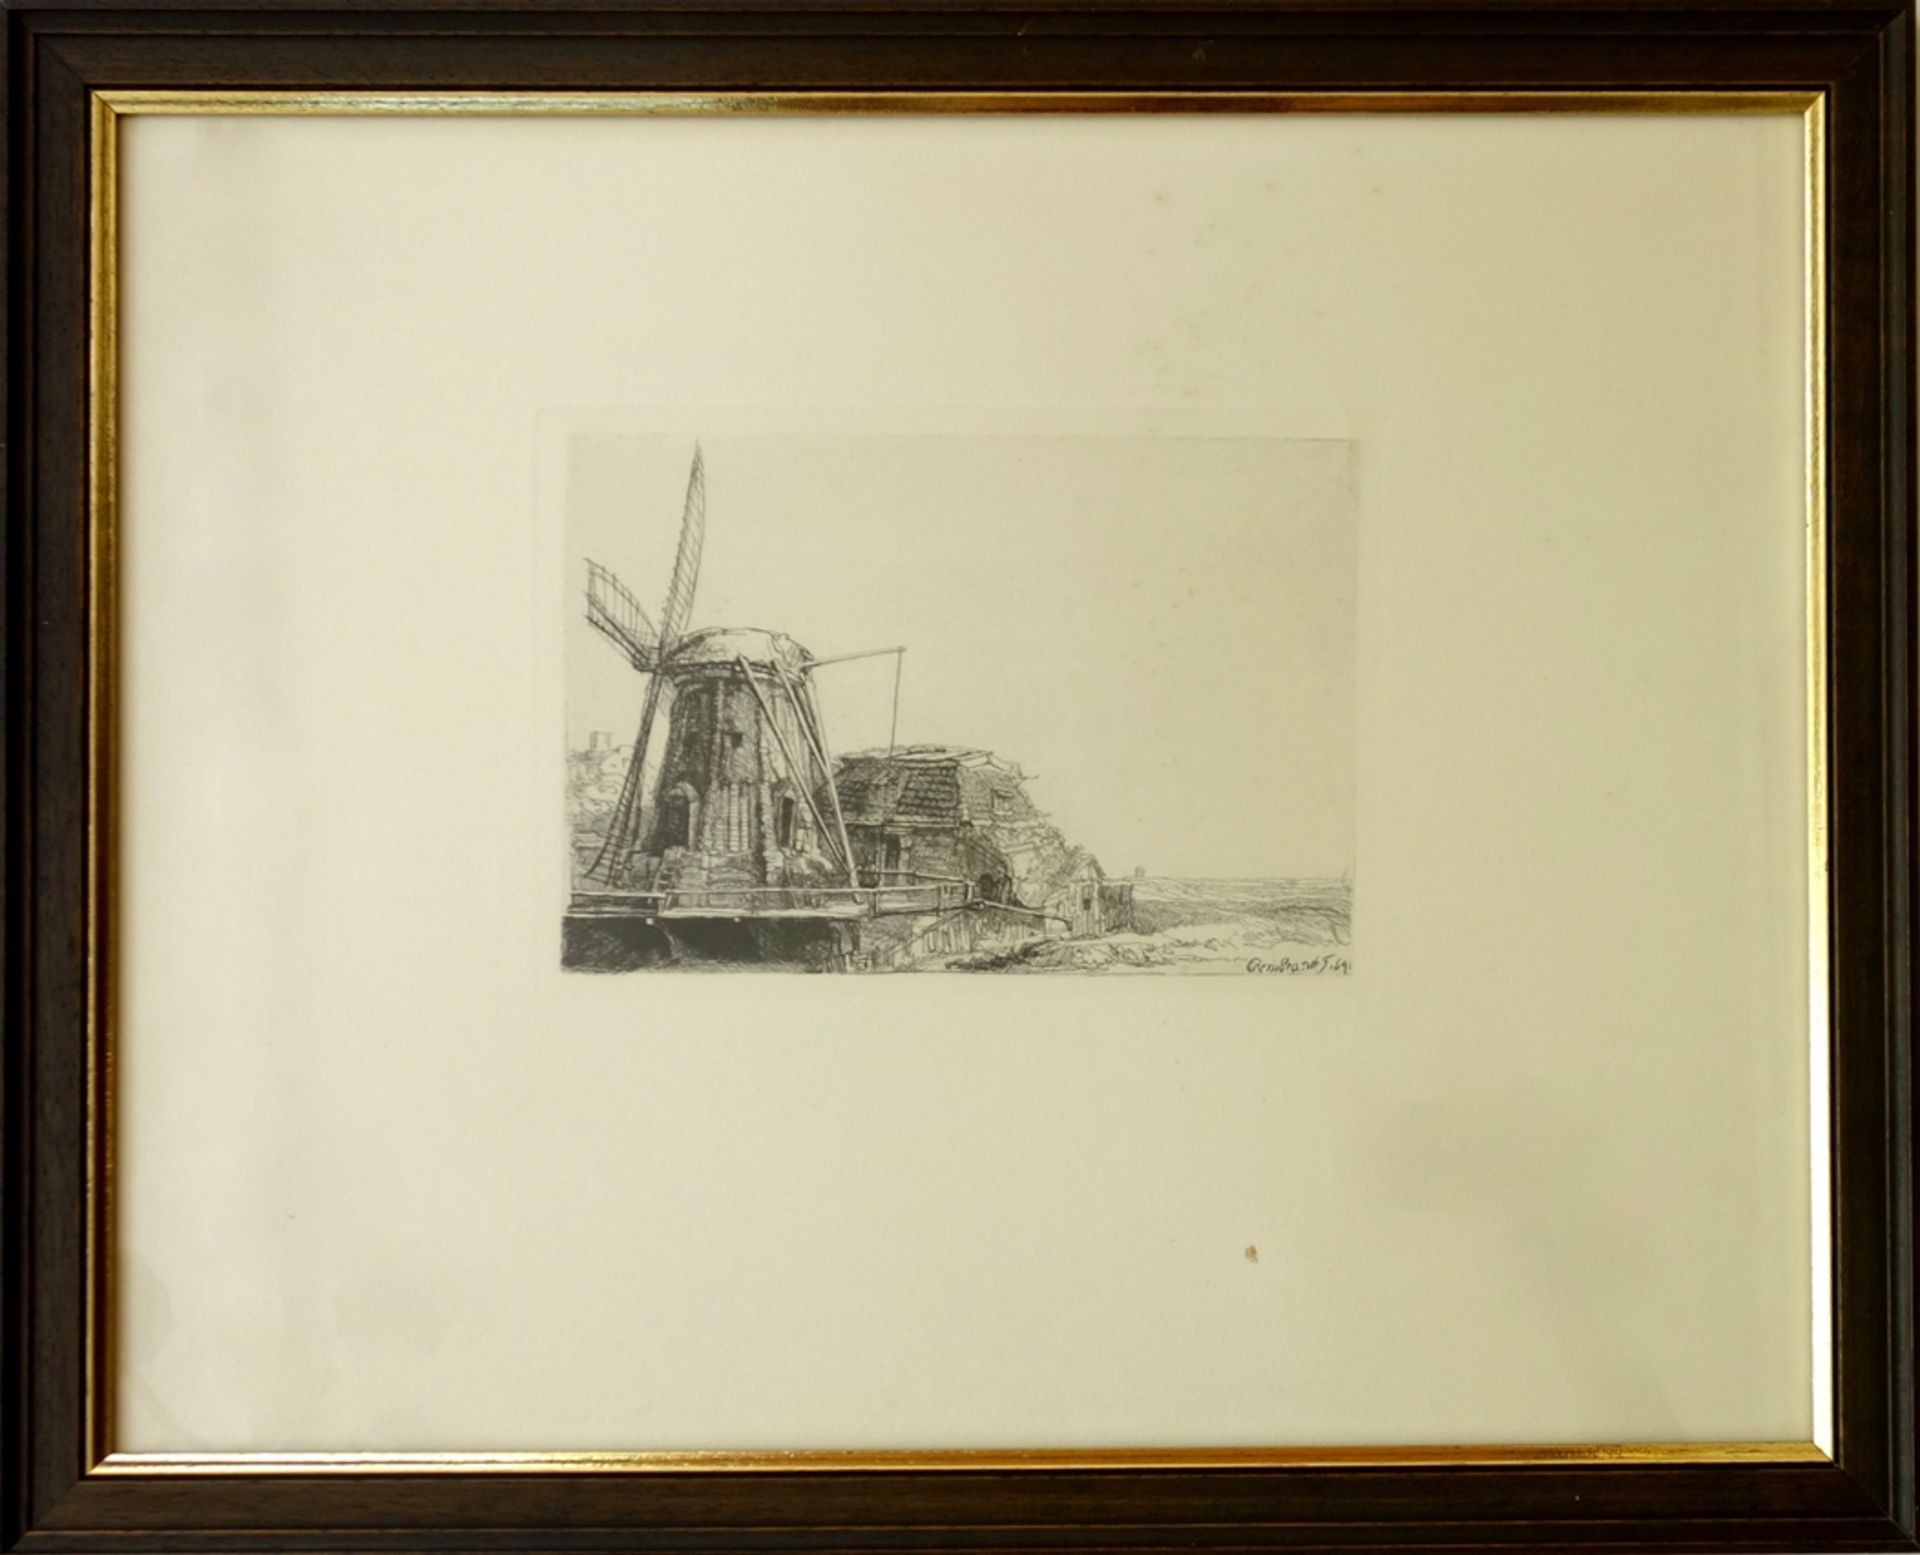 Faksimile-Radierung nach Rembrandt van Rijn (1606, Leiden - 1669, Amsterdam) "Die Windmühle" von